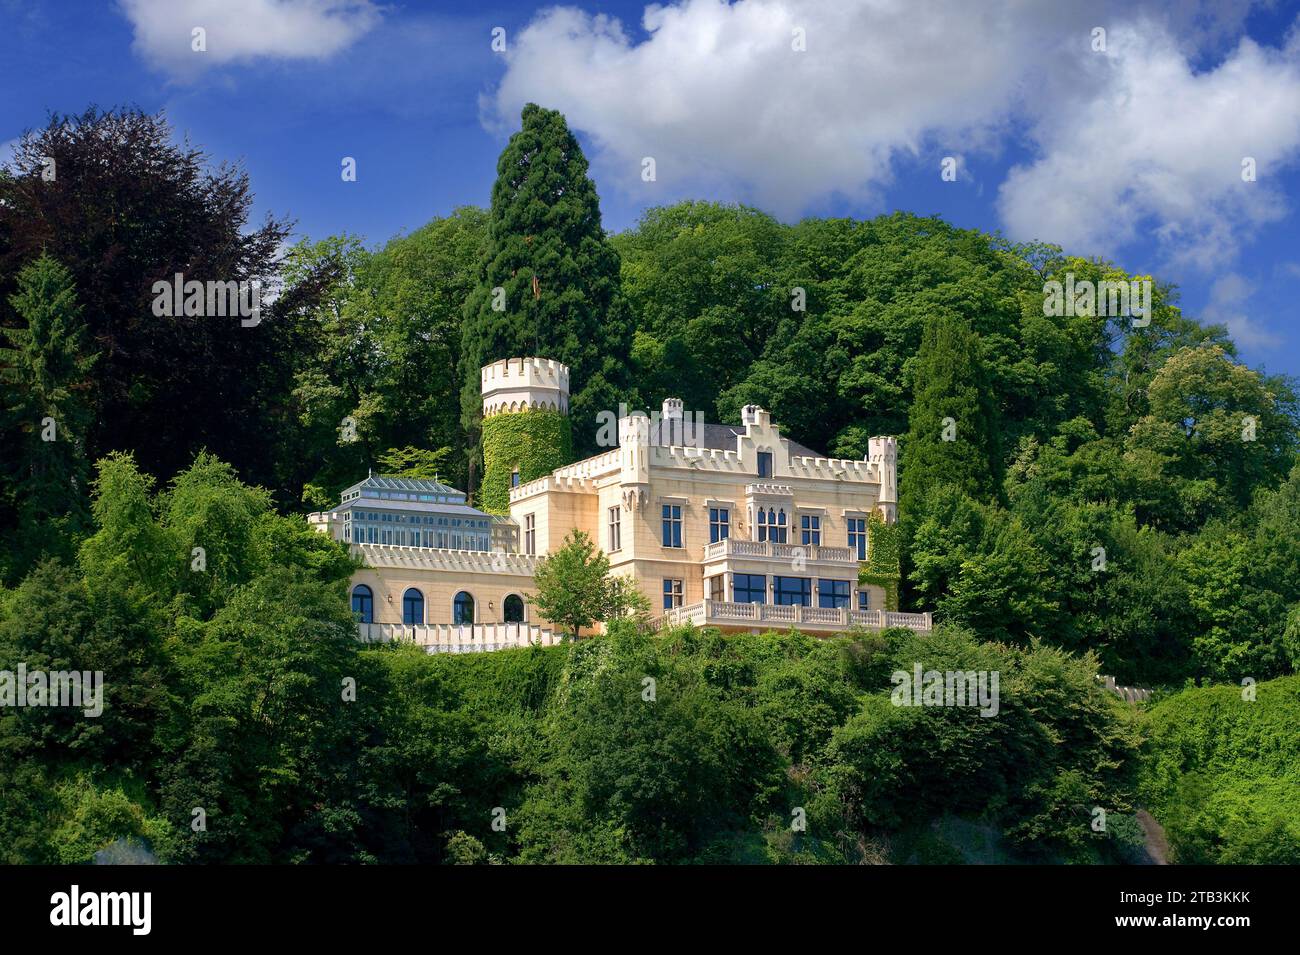 Europa, Deutschland, Rheinland-Pfalz, Remagen, Schloss Marienfels von 1859, neugotisch, Foto Stock